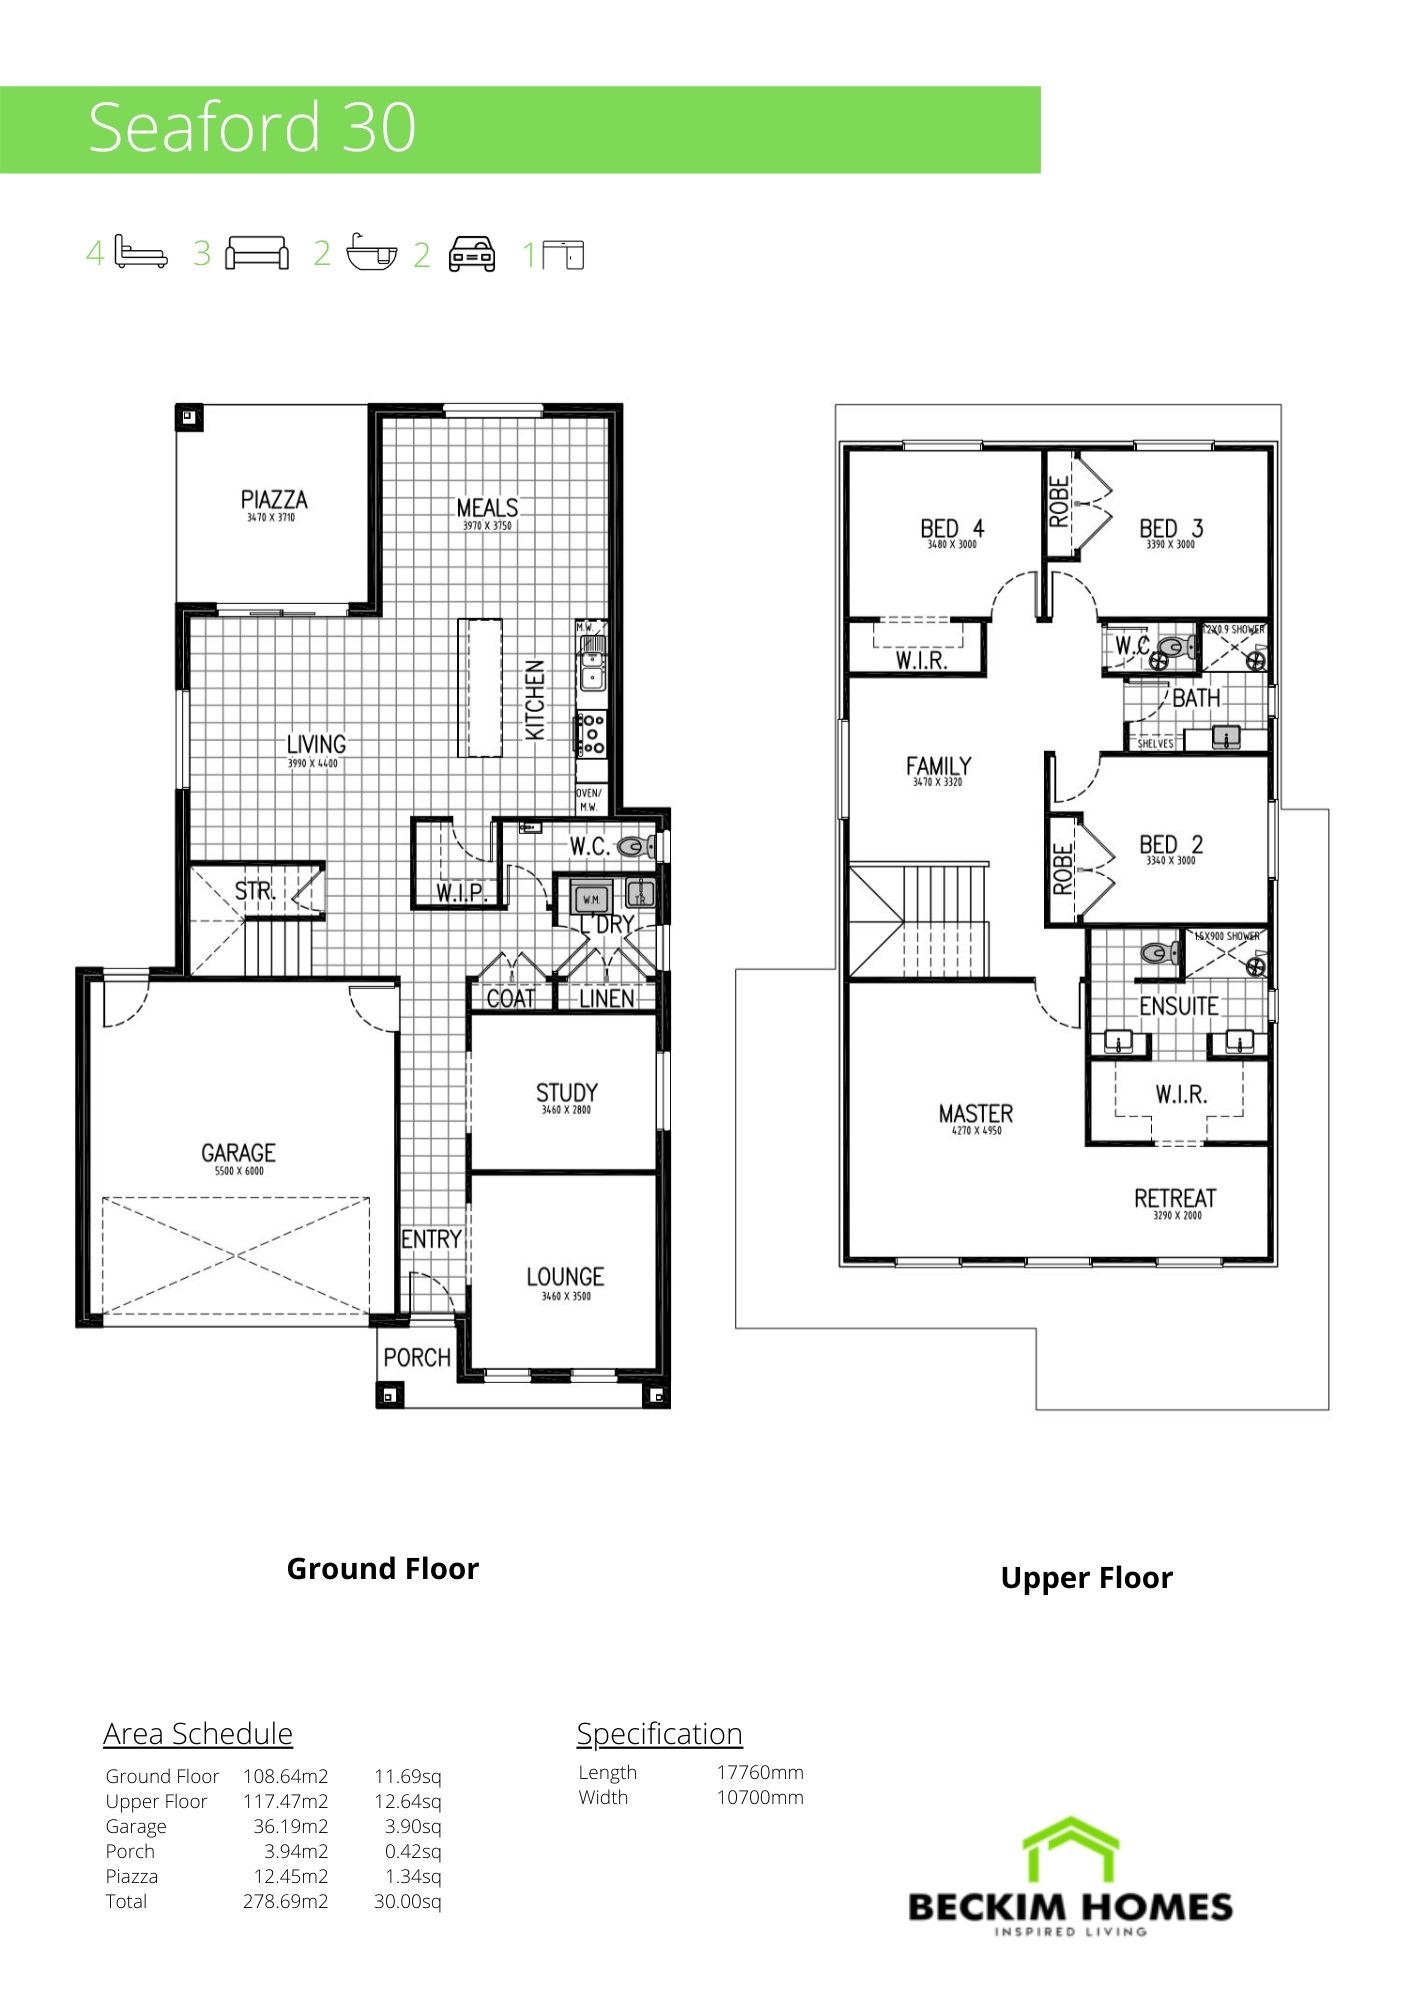 Double Storey Floor Plans Beckim Homes New Home Builders